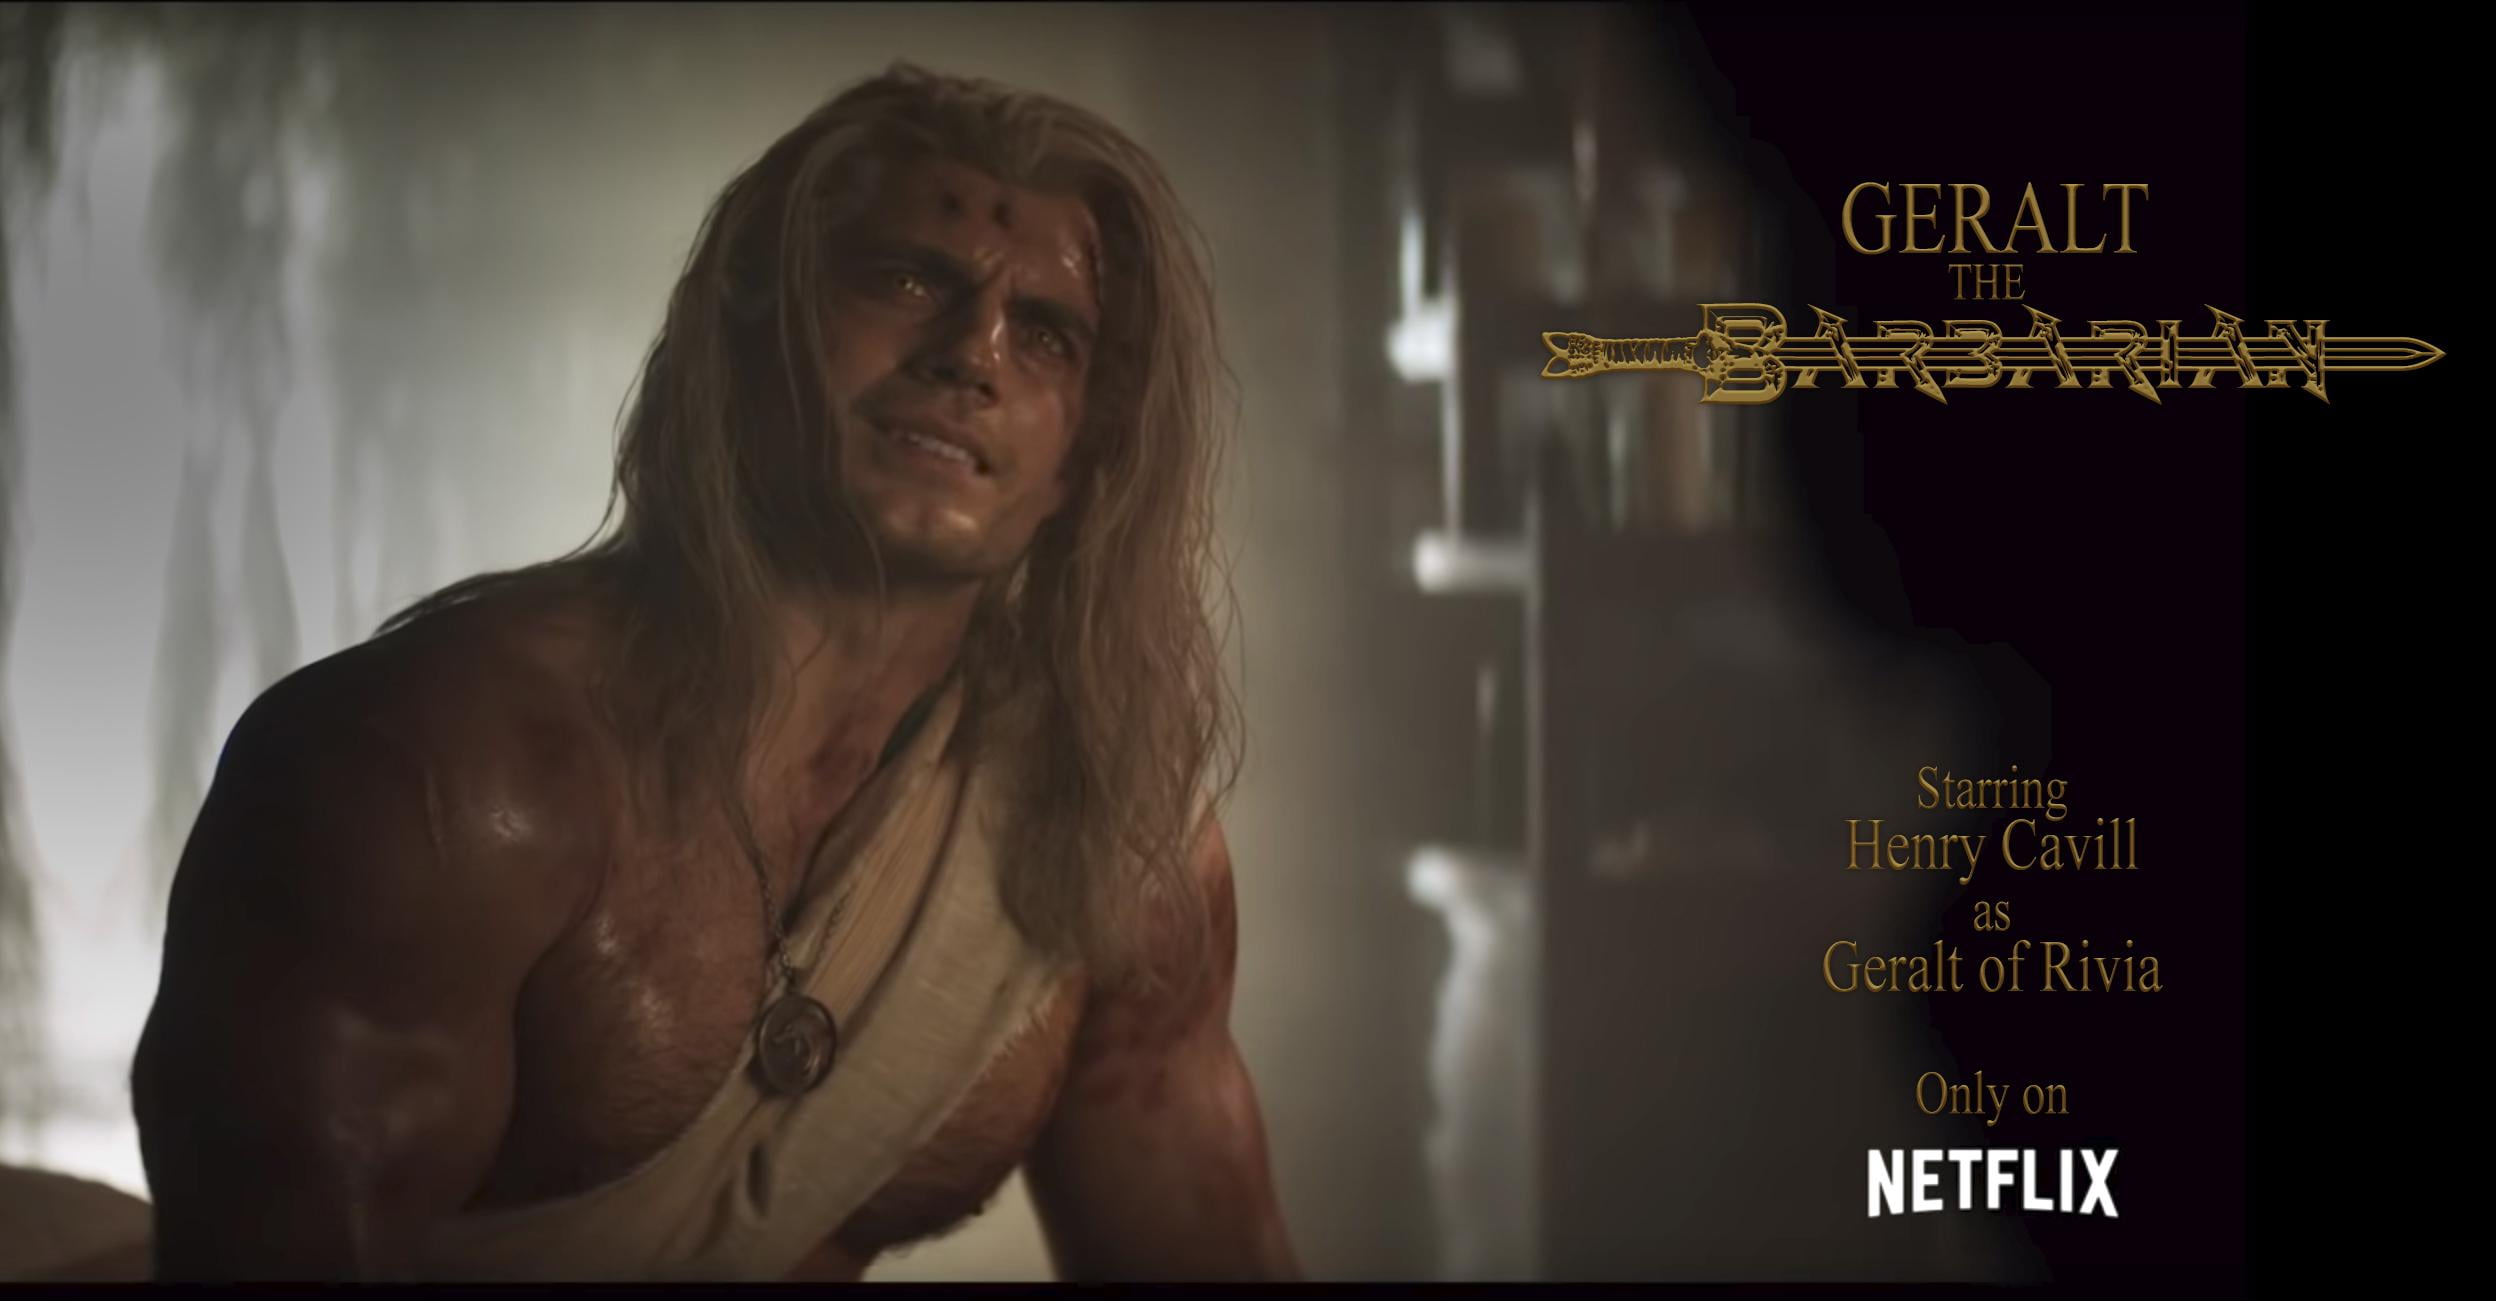 witcher memes - human - Geralt The Starring Henry Cavill Geralt of Rivia Only on Netflix